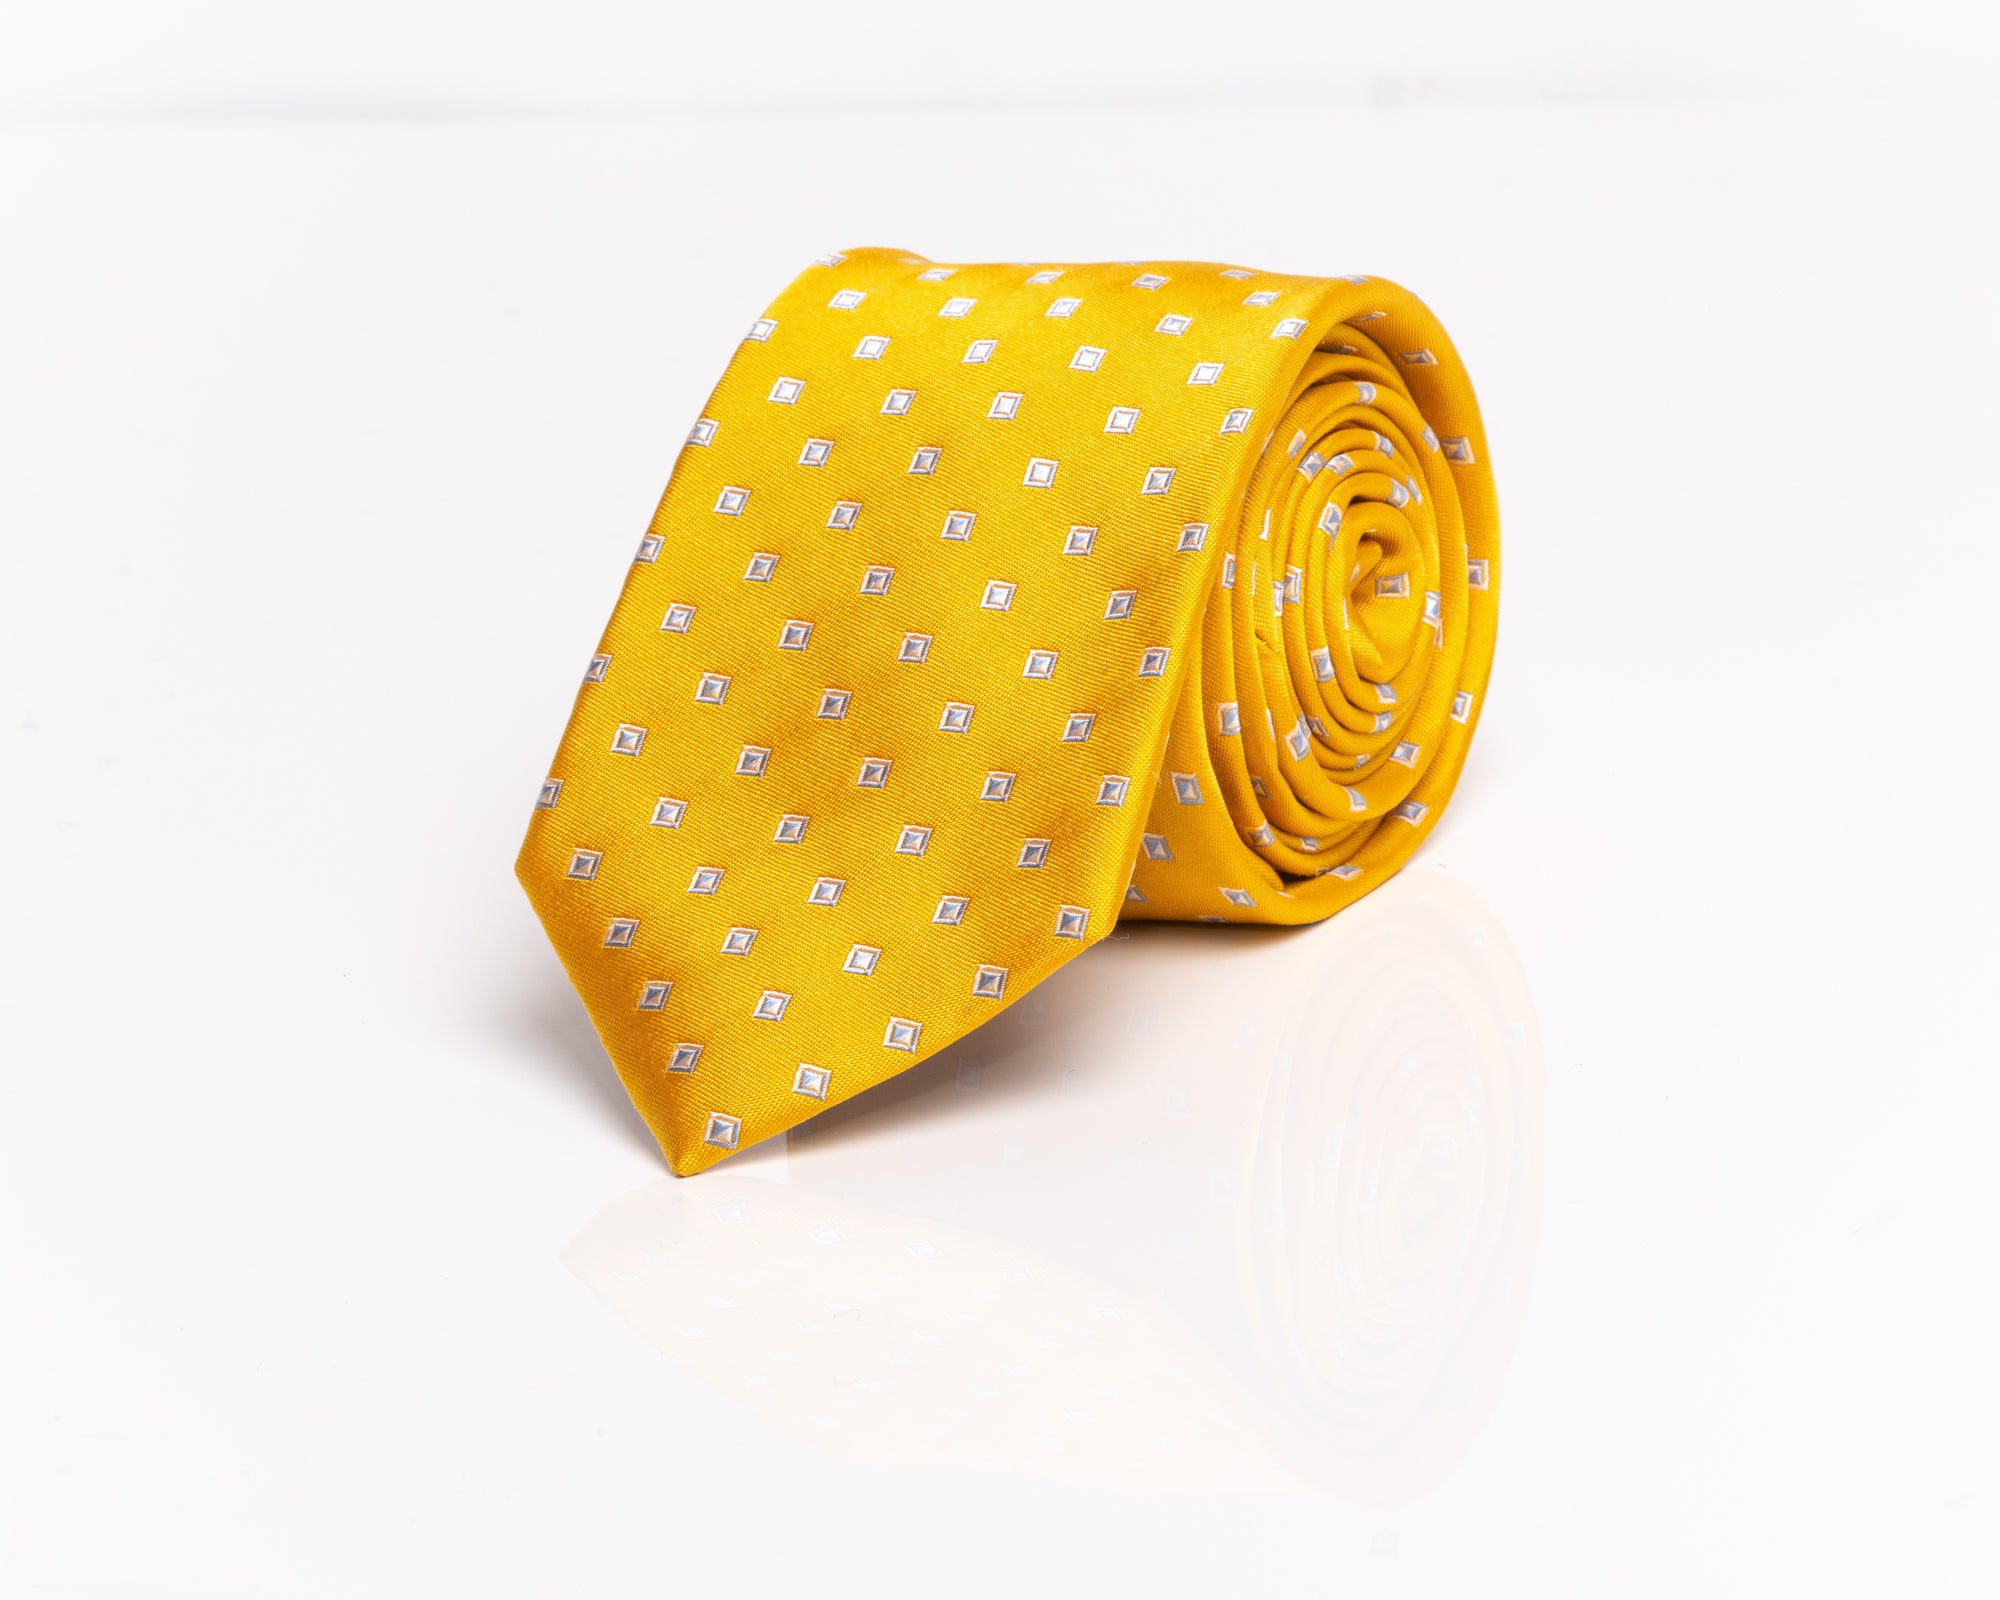 Yellow With White Diamond Micro Prints Tie